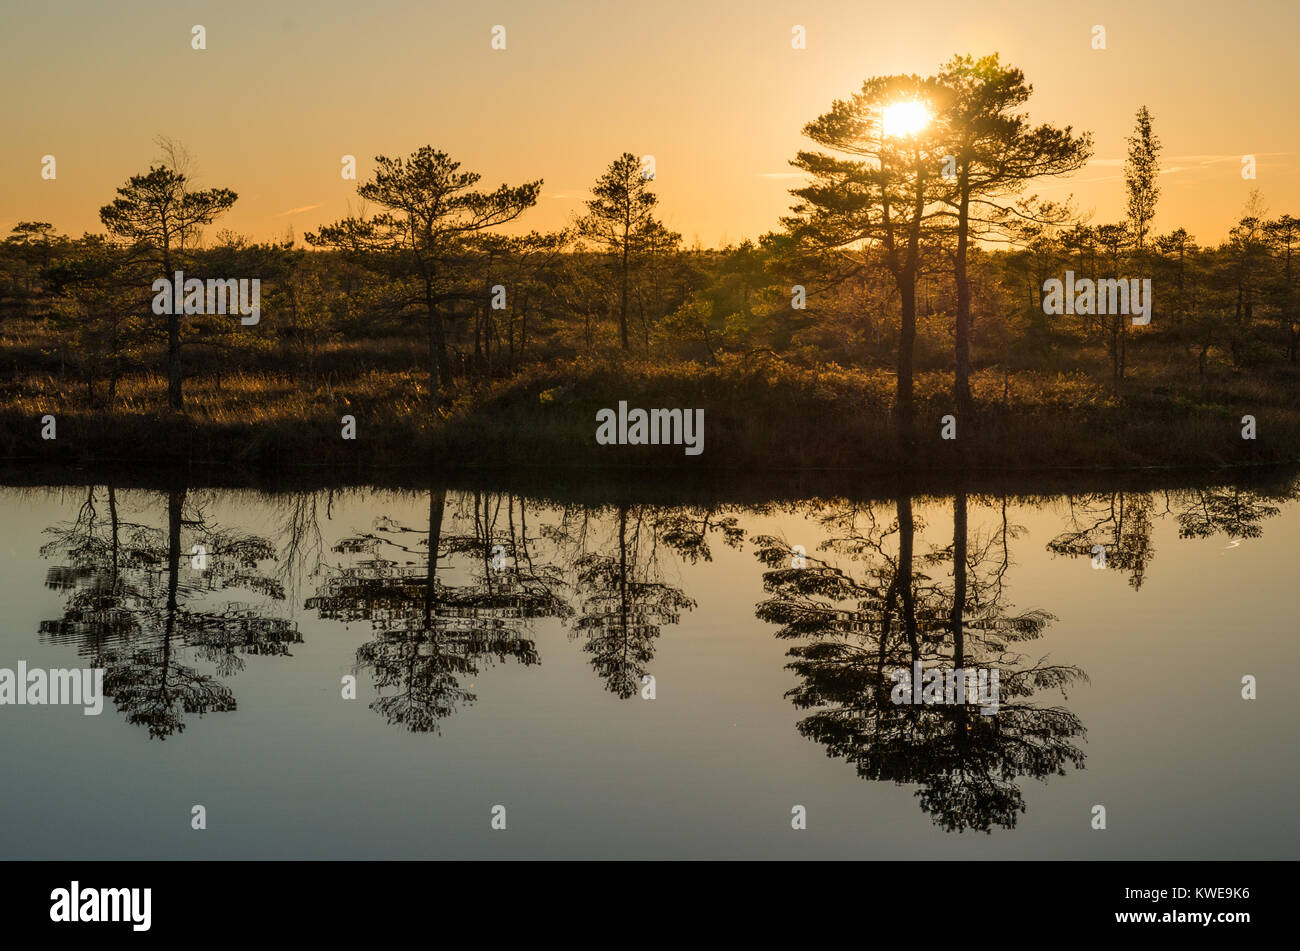 Una escena en un pantano durante el atardecer con luz naranja, árbol siluetas y reflejos en el estanque. Foto de stock